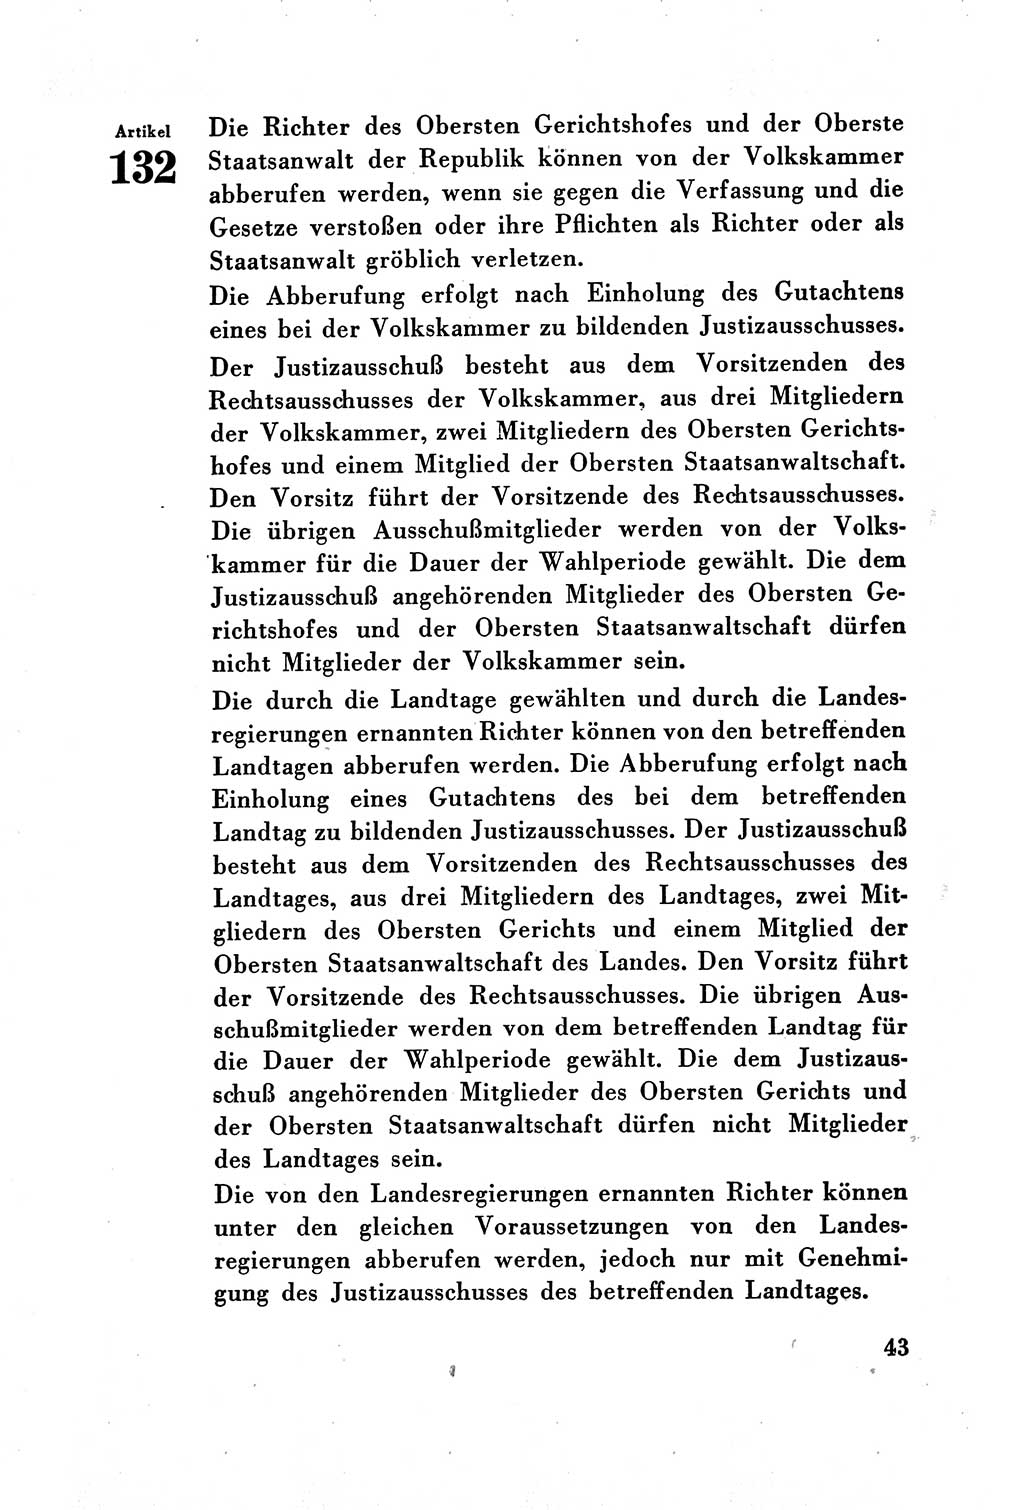 Verfassung der Deutschen Demokratischen Republik (DDR) vom 7. Oktober 1949, Seite 43 (Verf. DDR 1949, S. 43)